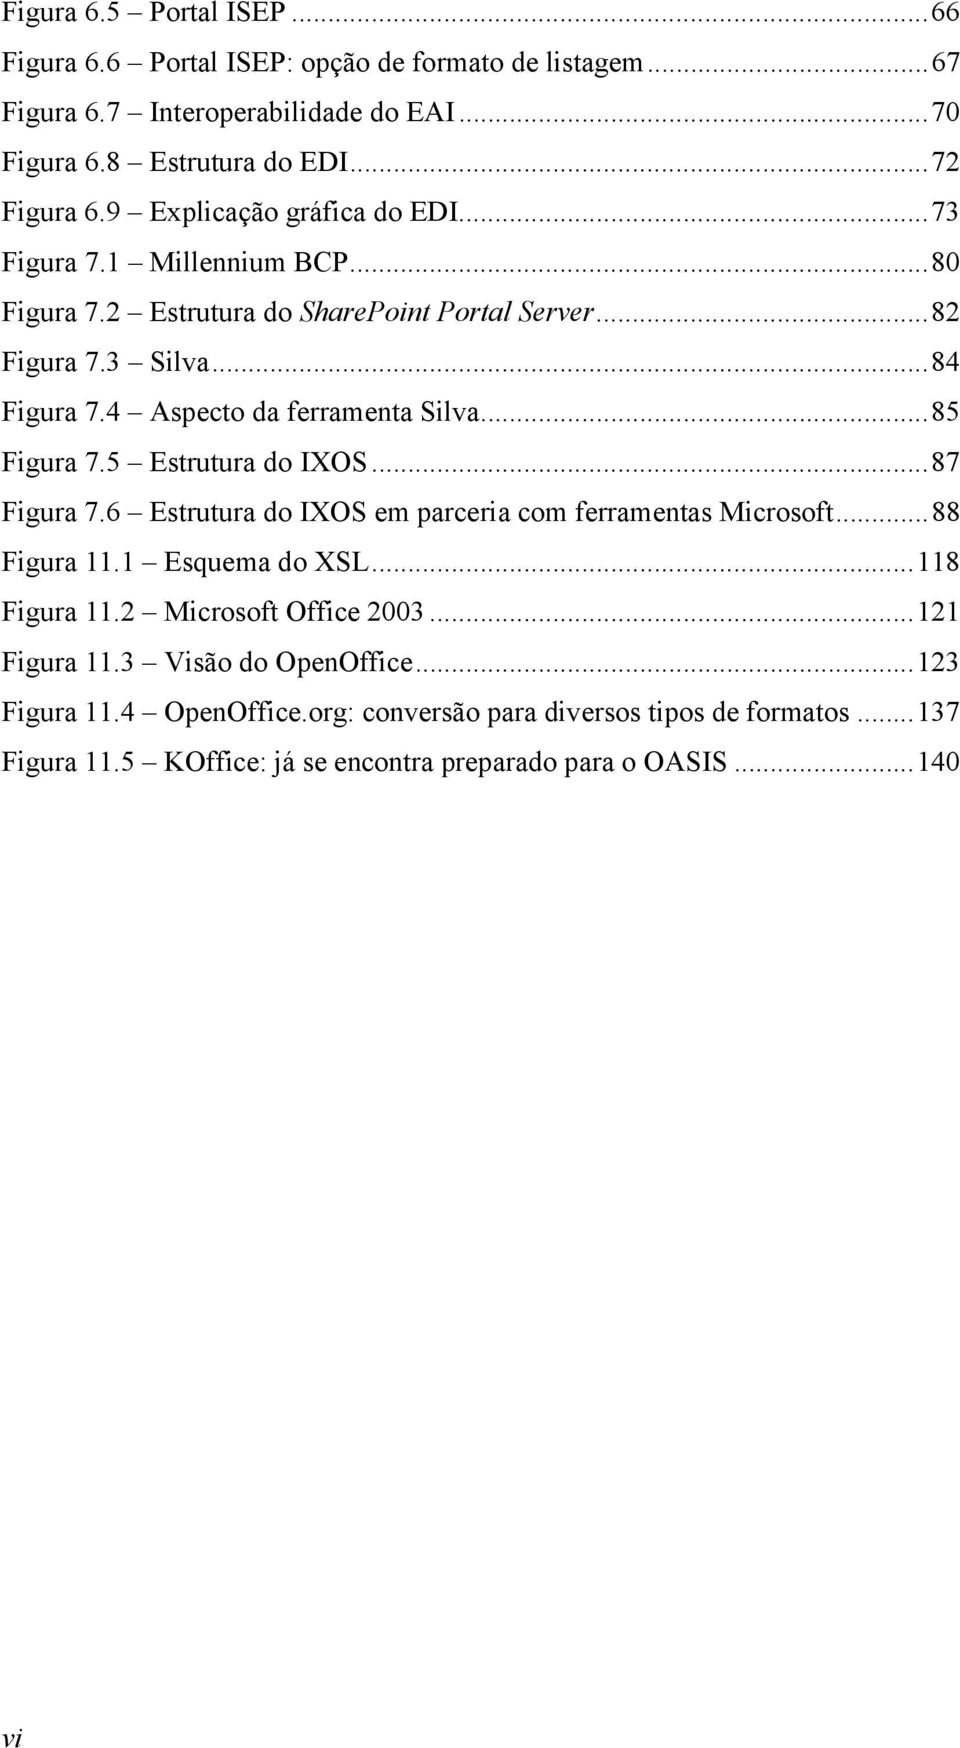 ..85 Figura 7.5 Estrutura do IXOS...87 Figura 7.6 Estrutura do IXOS em parceria com ferramentas Microsoft...88 Figura 11.1 Esquema do XSL...118 Figura 11.2 Microsoft Office 2003.